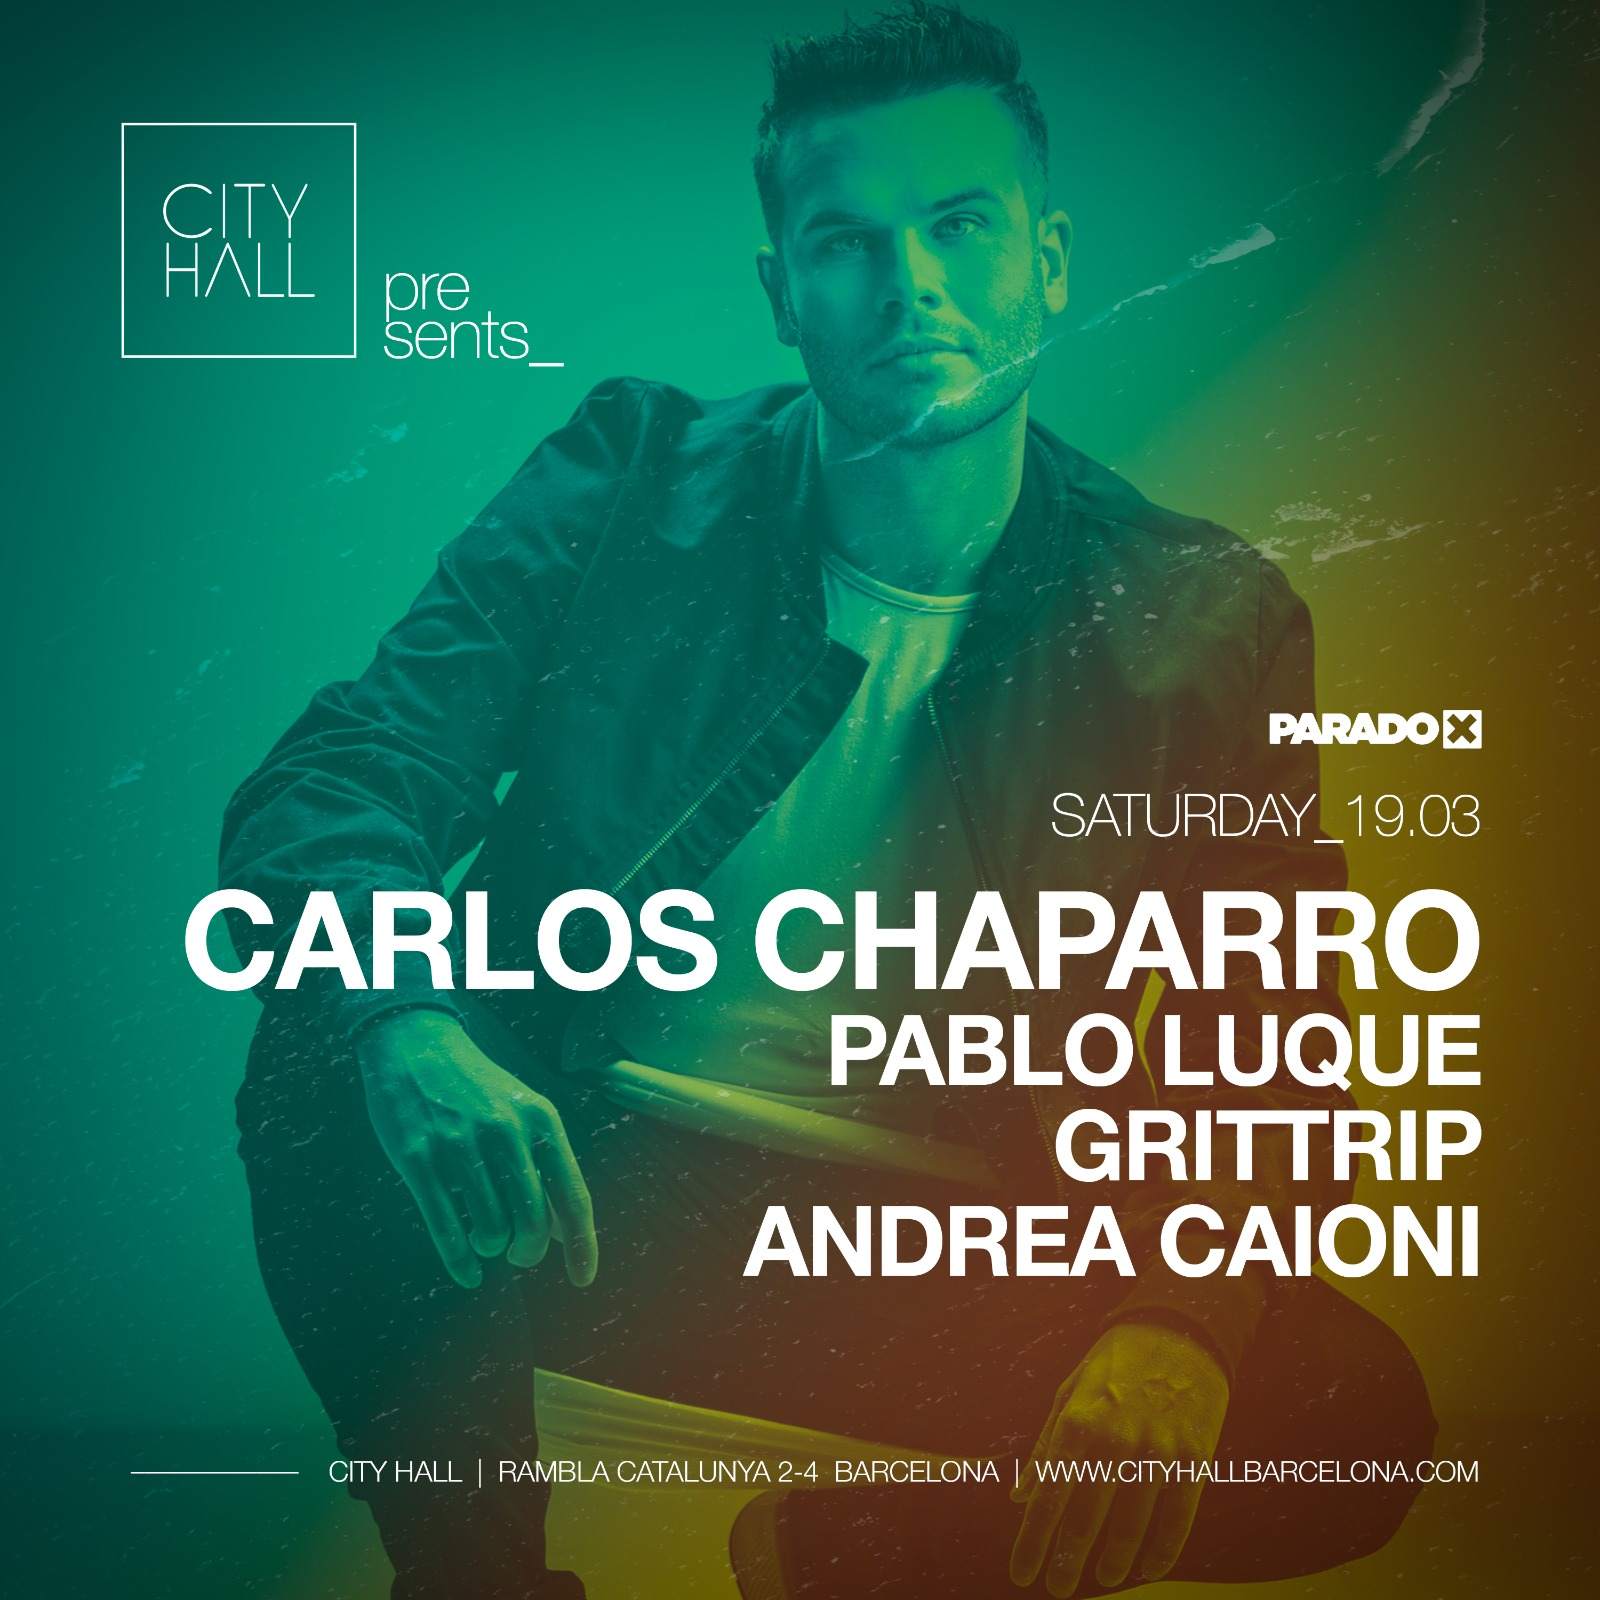 City Hall pres. Paradox with Carlos Chaparro - Pablo Luque - Grittrip - Andrea Caioni - フライヤー表